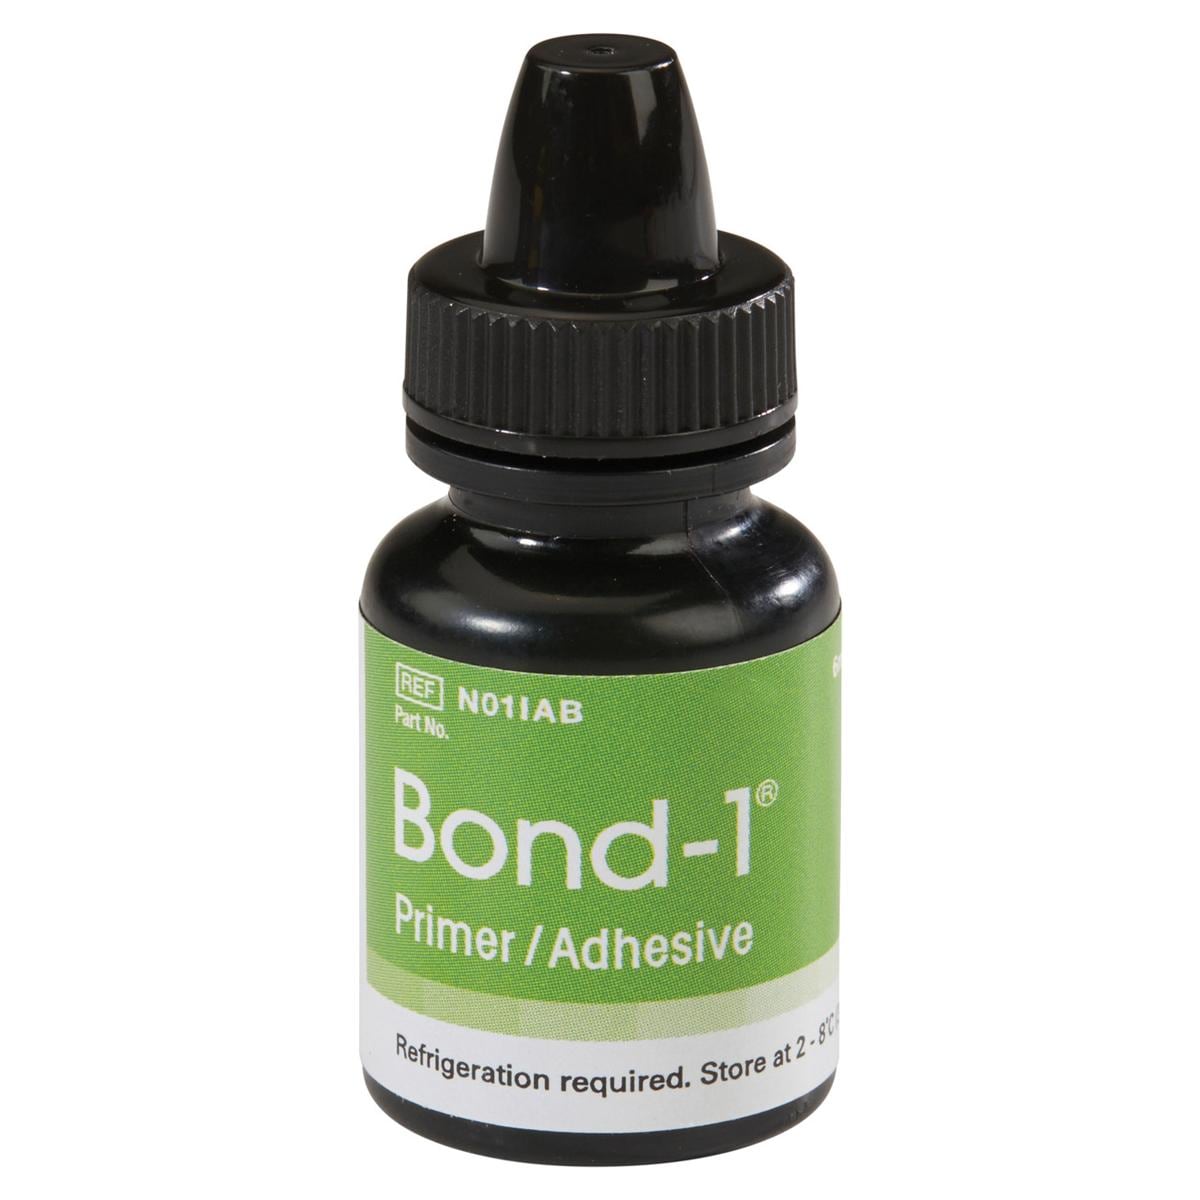 Bond-1 Primer / Adhesief - NO1IAB, flesje 6 ml